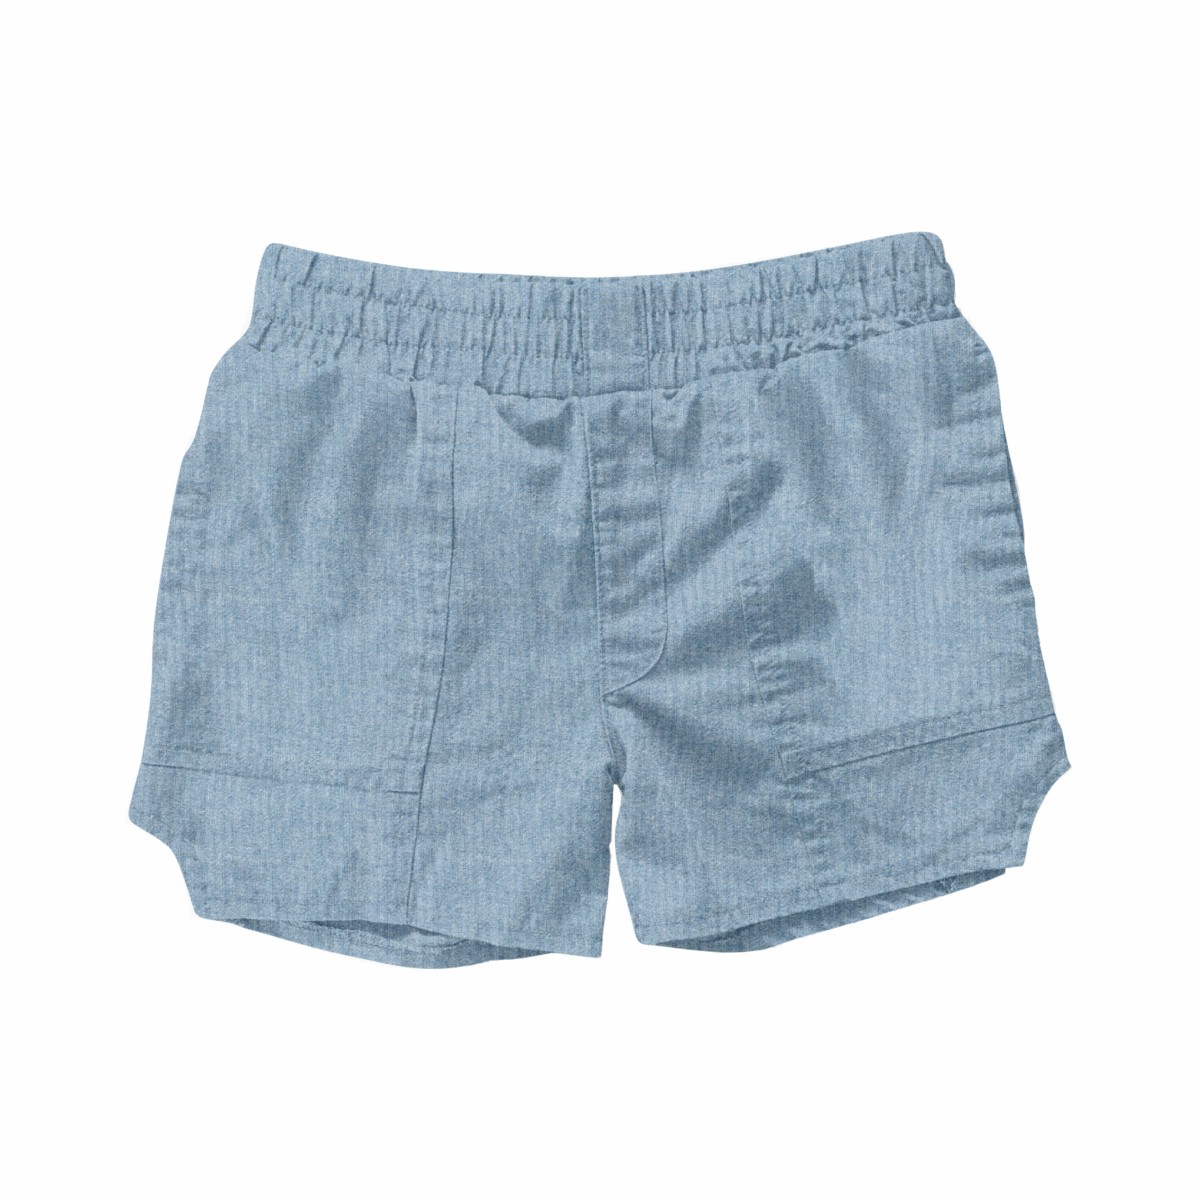 roam donna shorts | denim chambray